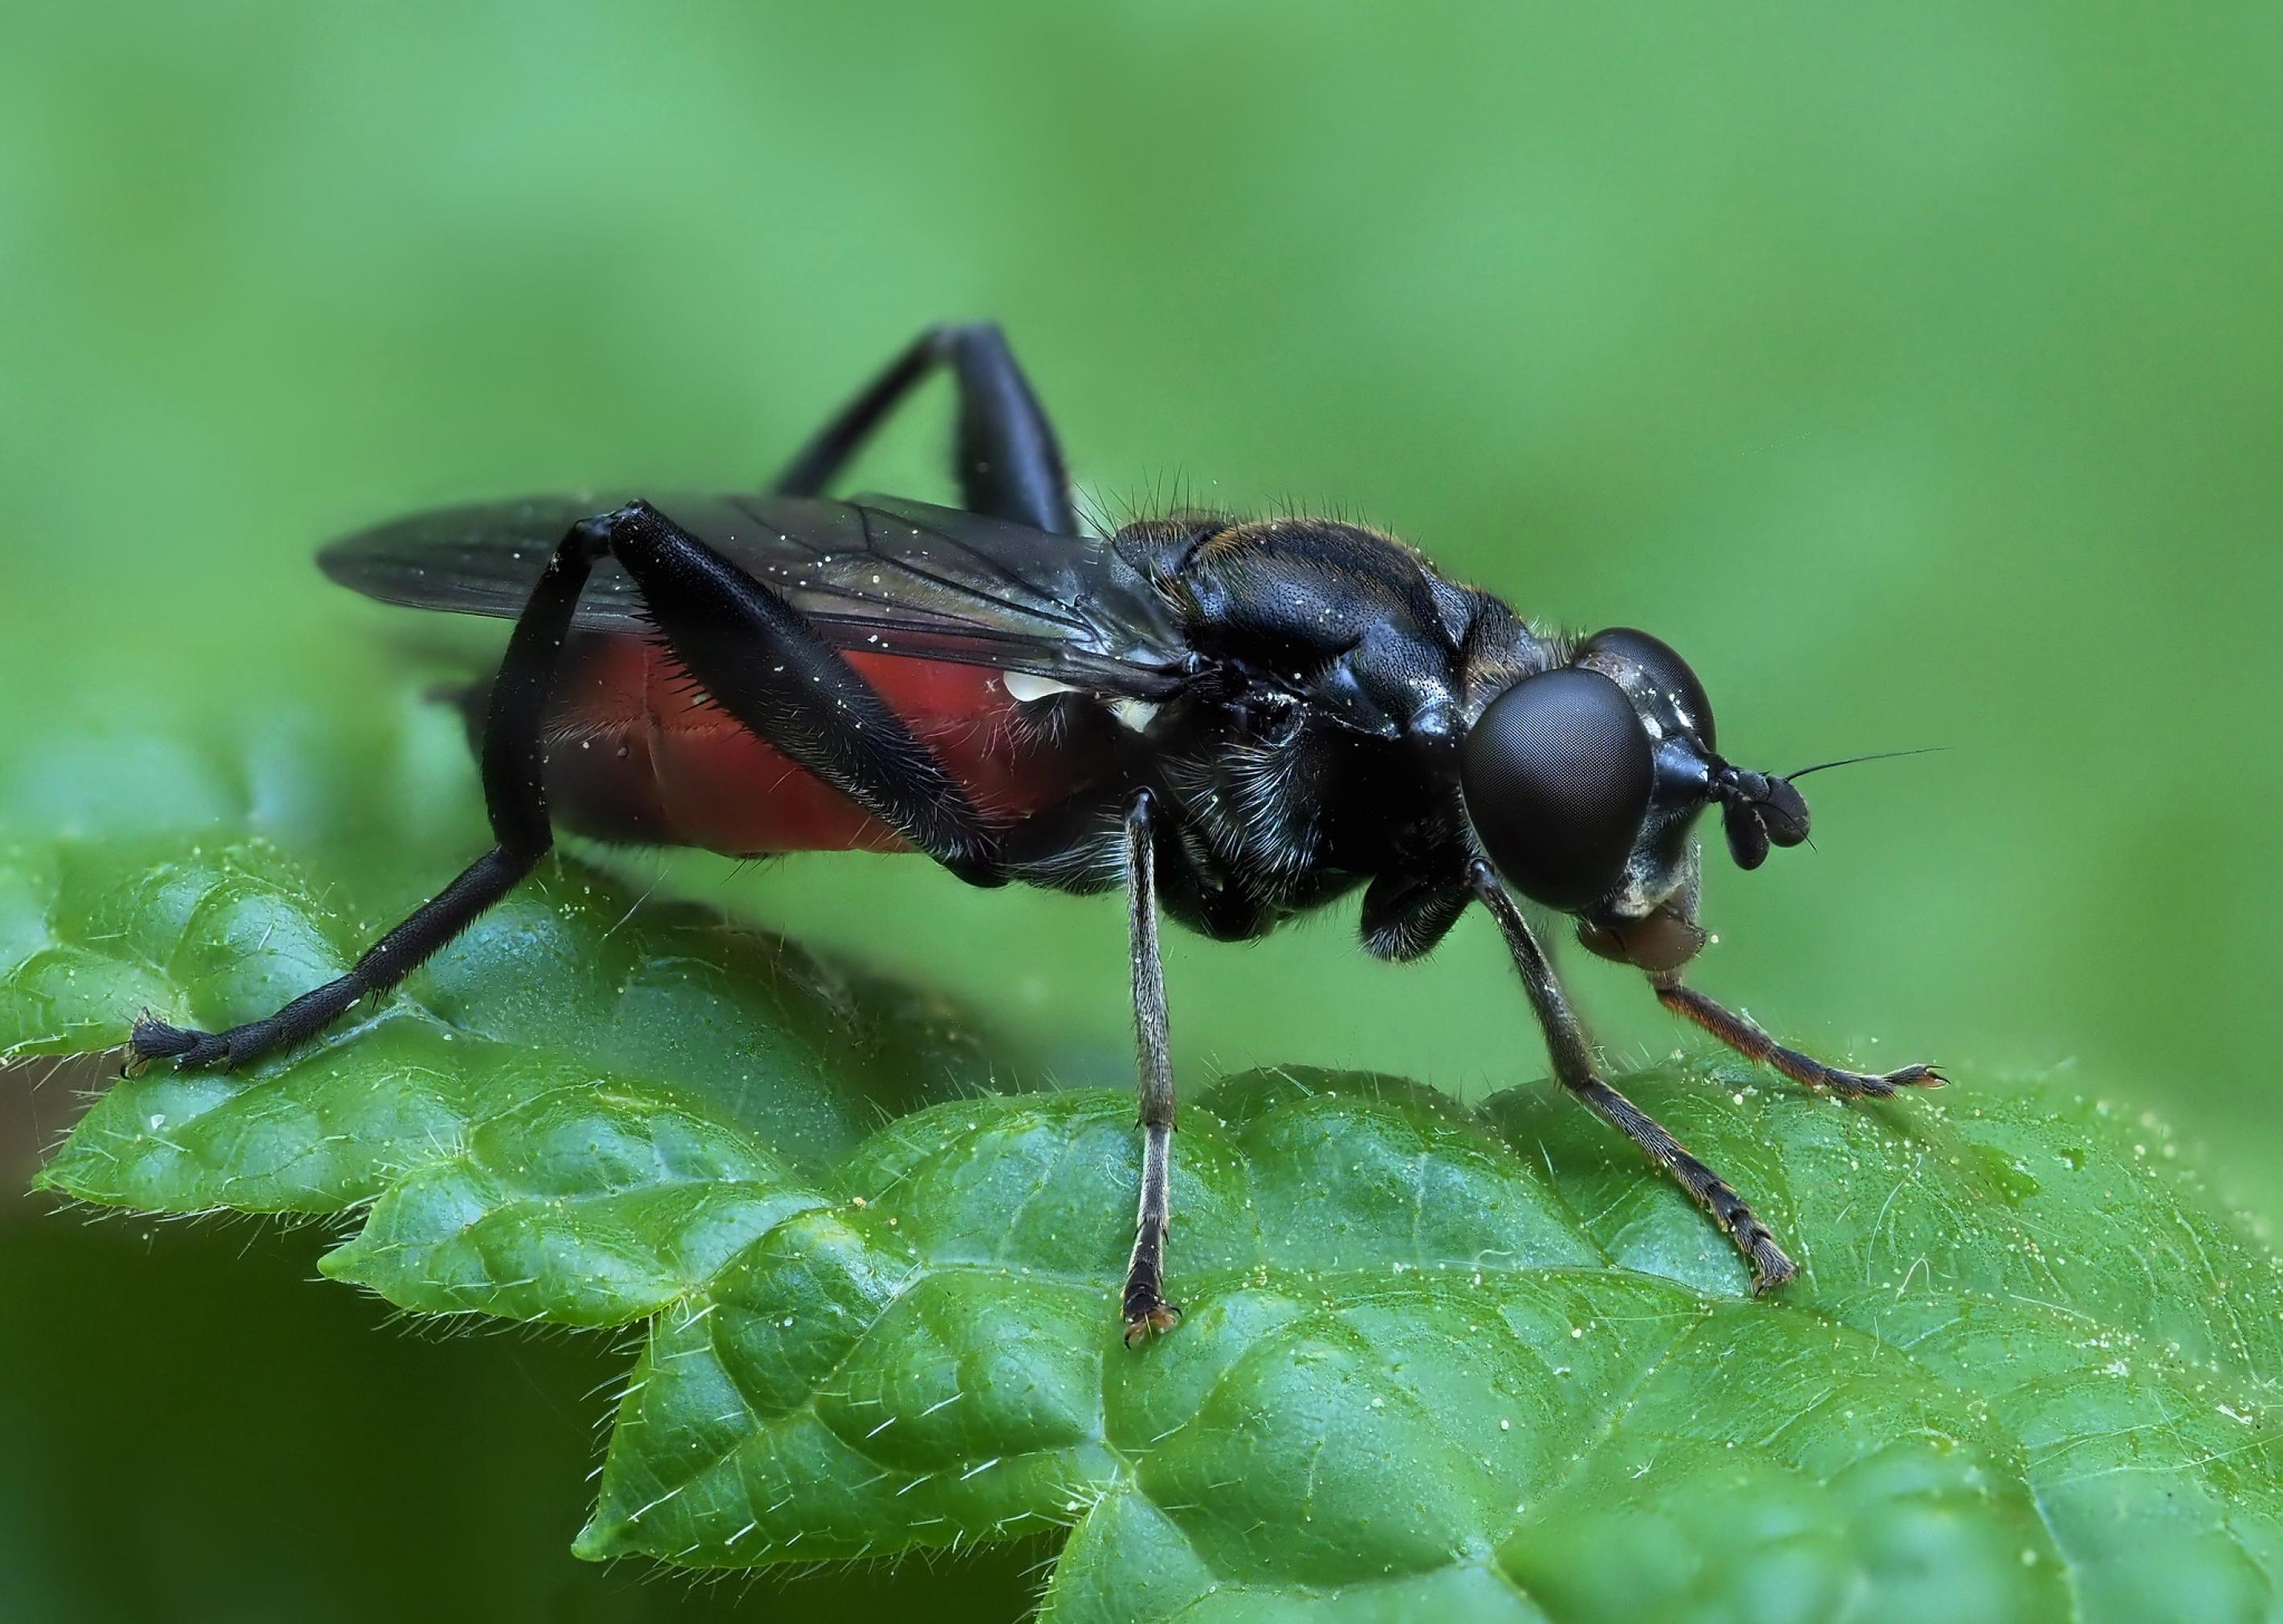 Ein ziemlich cool wirkendes schwarzes Insekt mit rotem Hinterleib in Nahaufnahme.